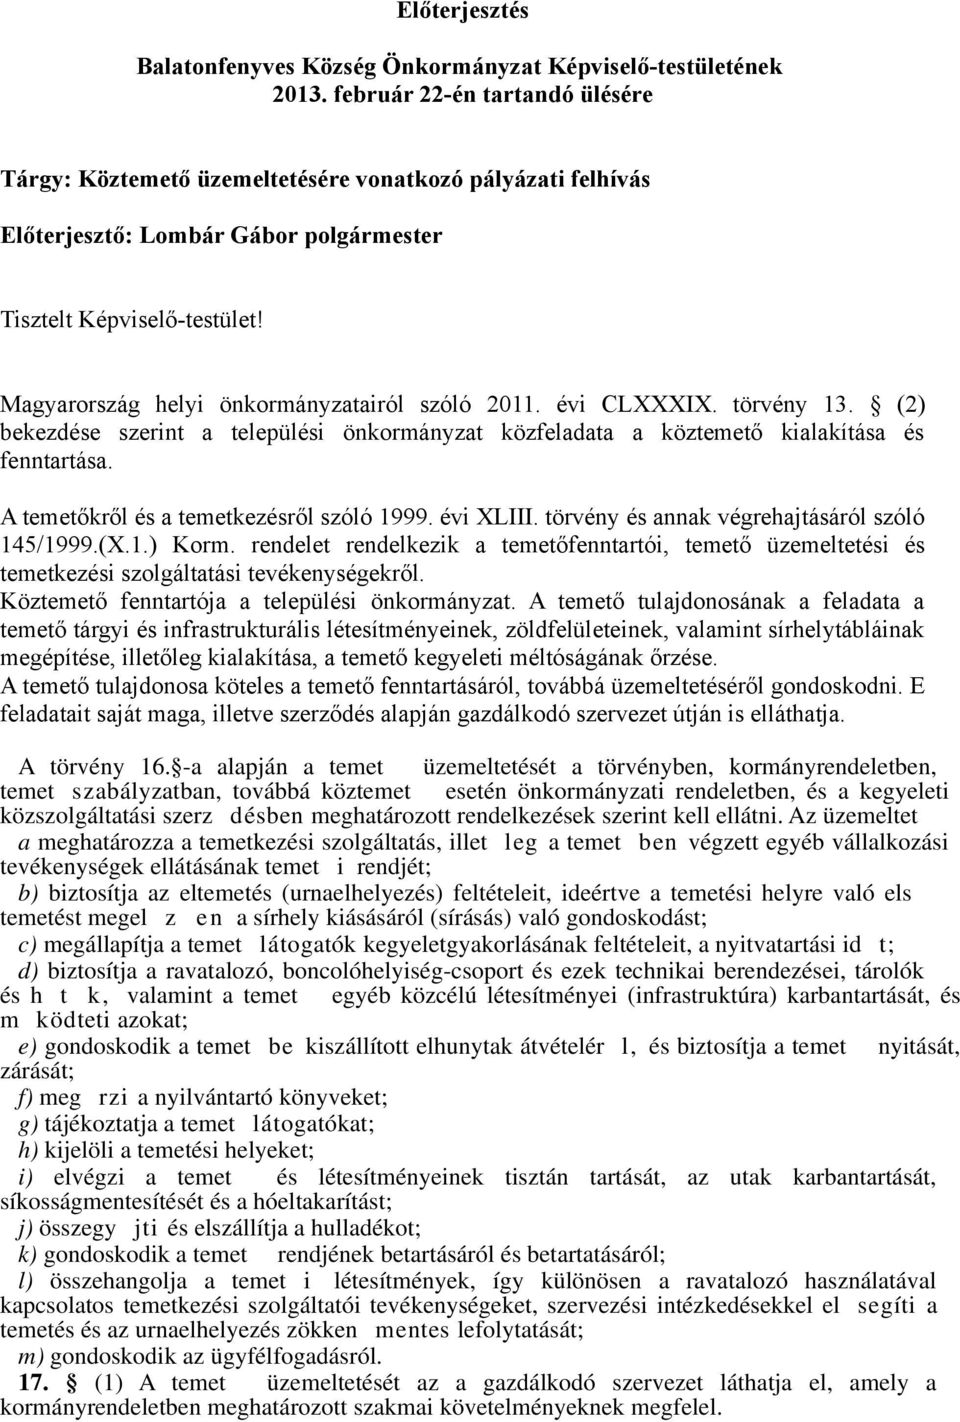 Magyarország helyi önkormányzatairól szóló 2011. évi CLXXXIX. törvény 13. (2) bekezdése szerint a települési önkormányzat közfeladata a köztemető kialakítása és fenntartása.